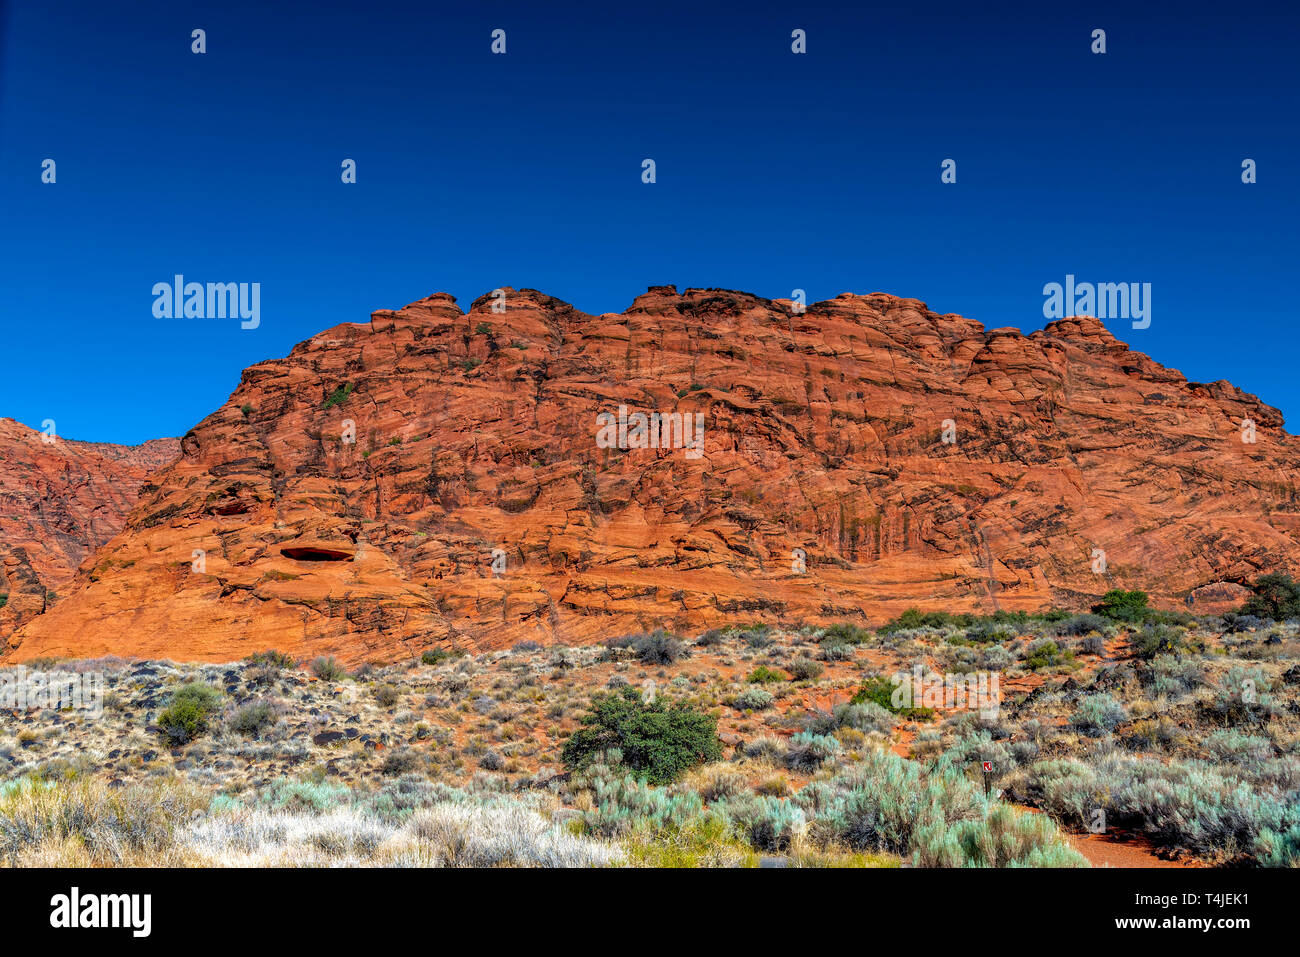 Cielo blu scuro, con ripidi red roccioso canyon parete sottostante con cespugli verdi e sagebrush. Foto Stock